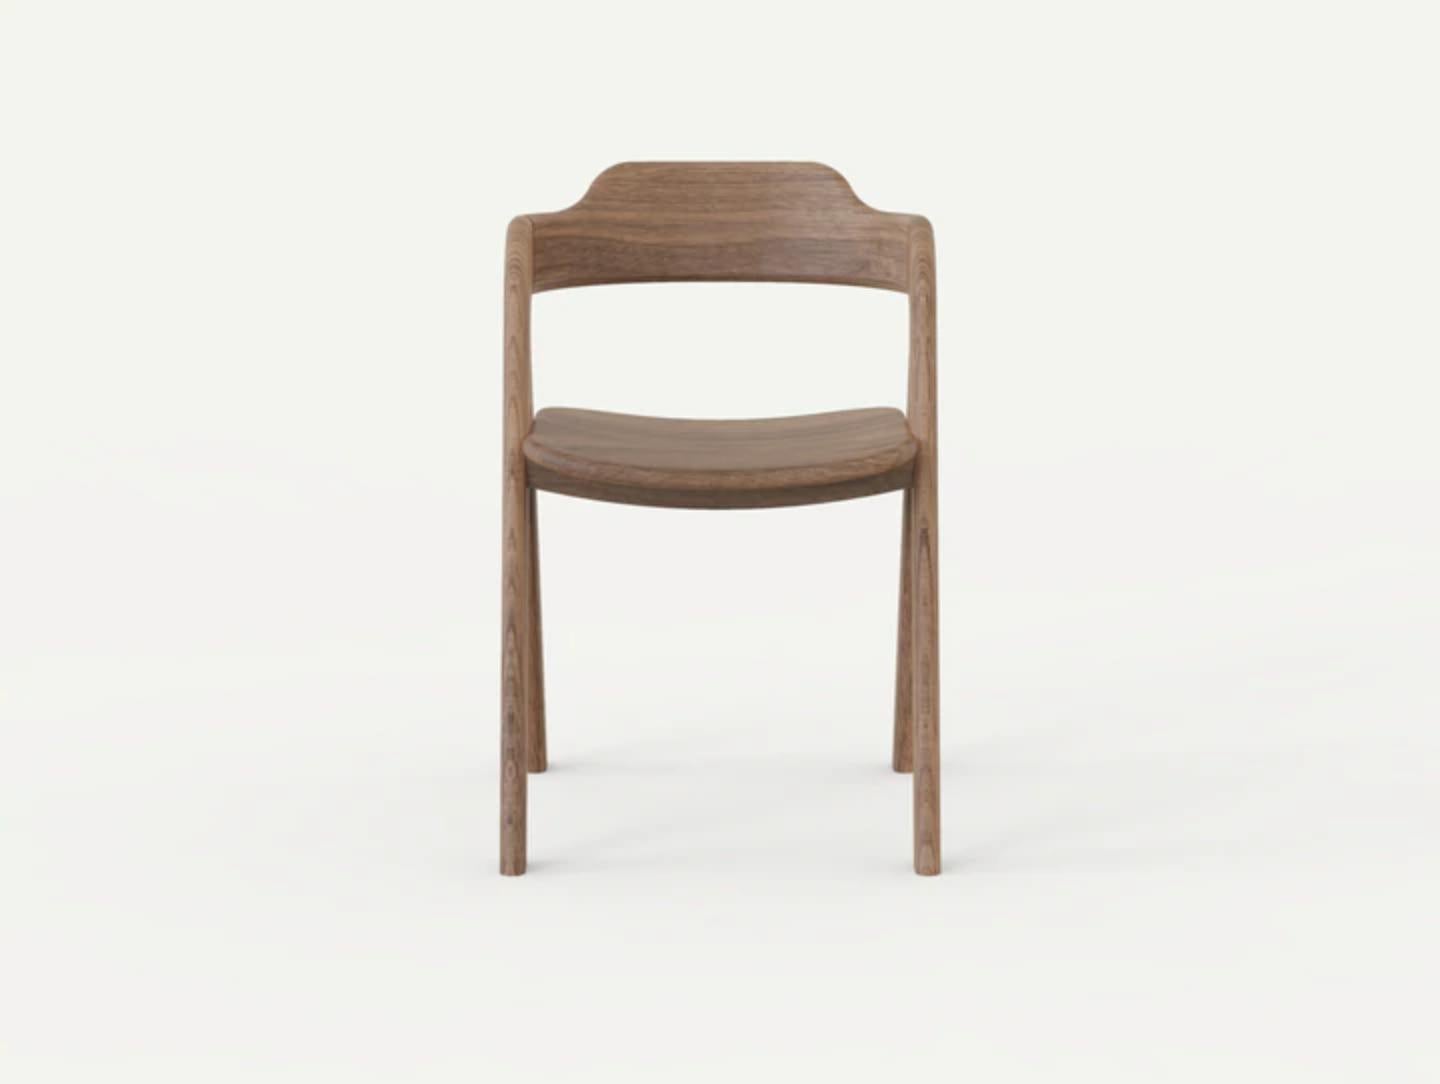 Chaise Balance de Sebastián Angeles
Matériau : Noyer
Dimensions : L 40 x P 40 x 100 cm
Également disponible : Autres couleurs disponibles,

L'amour des processus, les propriétés des matériaux, les détails et les concepts font de Dorica Taller une